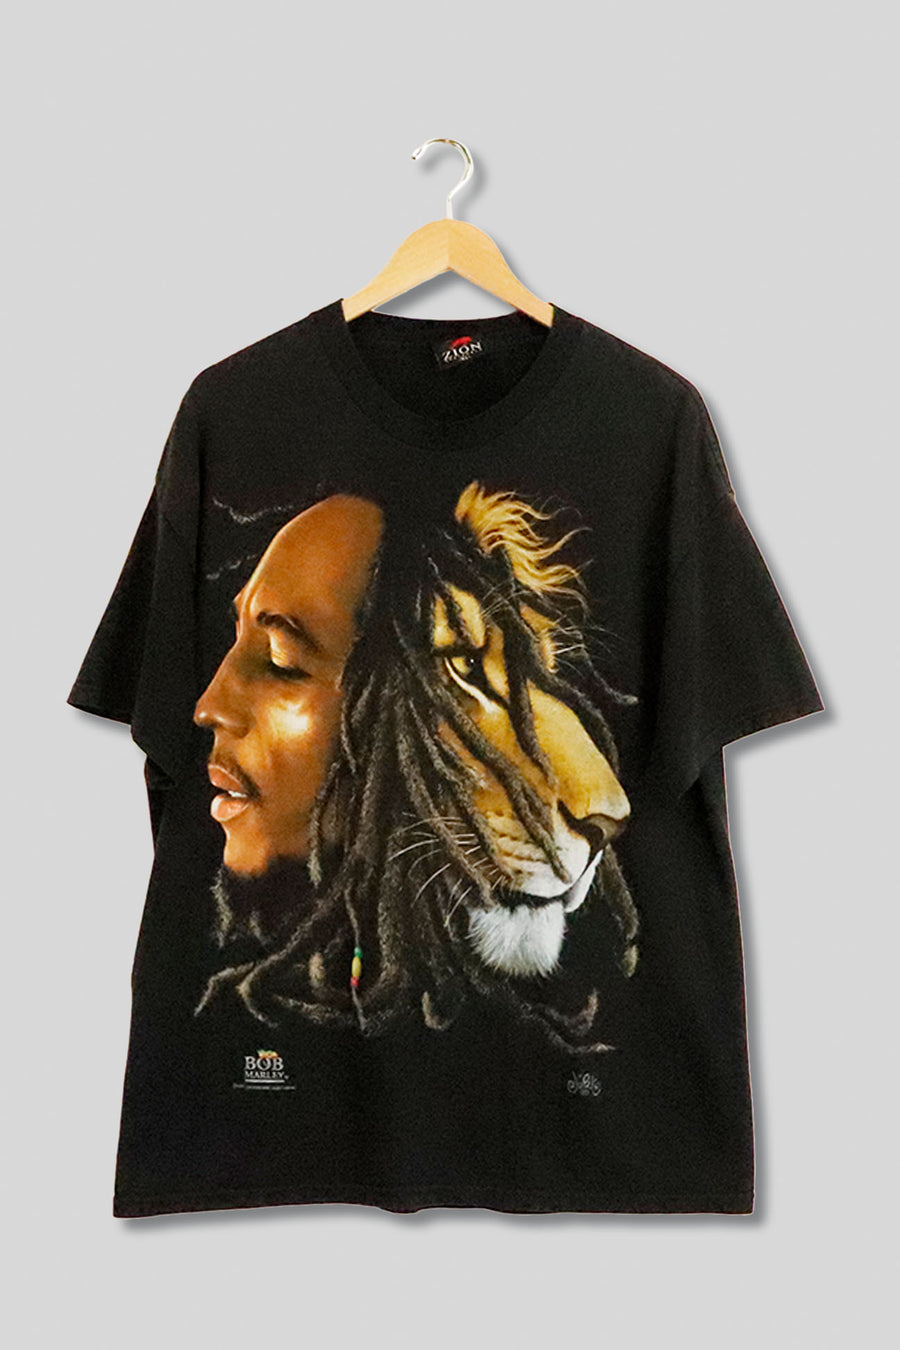 Vintage Bob Marley T Shirt Sz XL